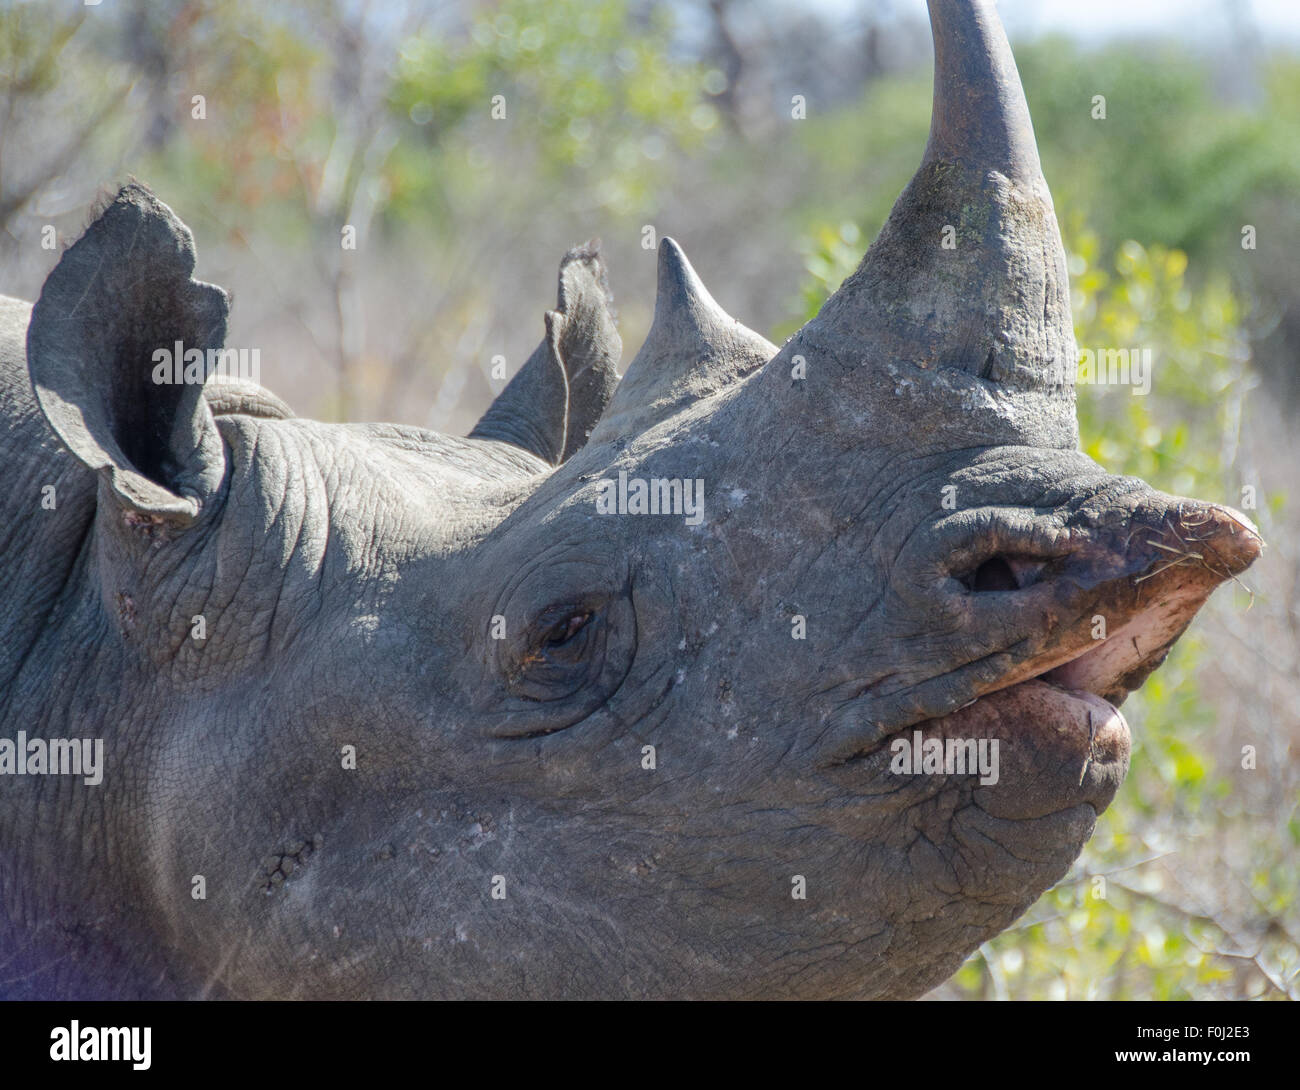 La esquiva y críticamente en peligro el rinoceronte negro se desplaza a través de la reserva de caza Mkhaya en Swazilandia. Foto de stock